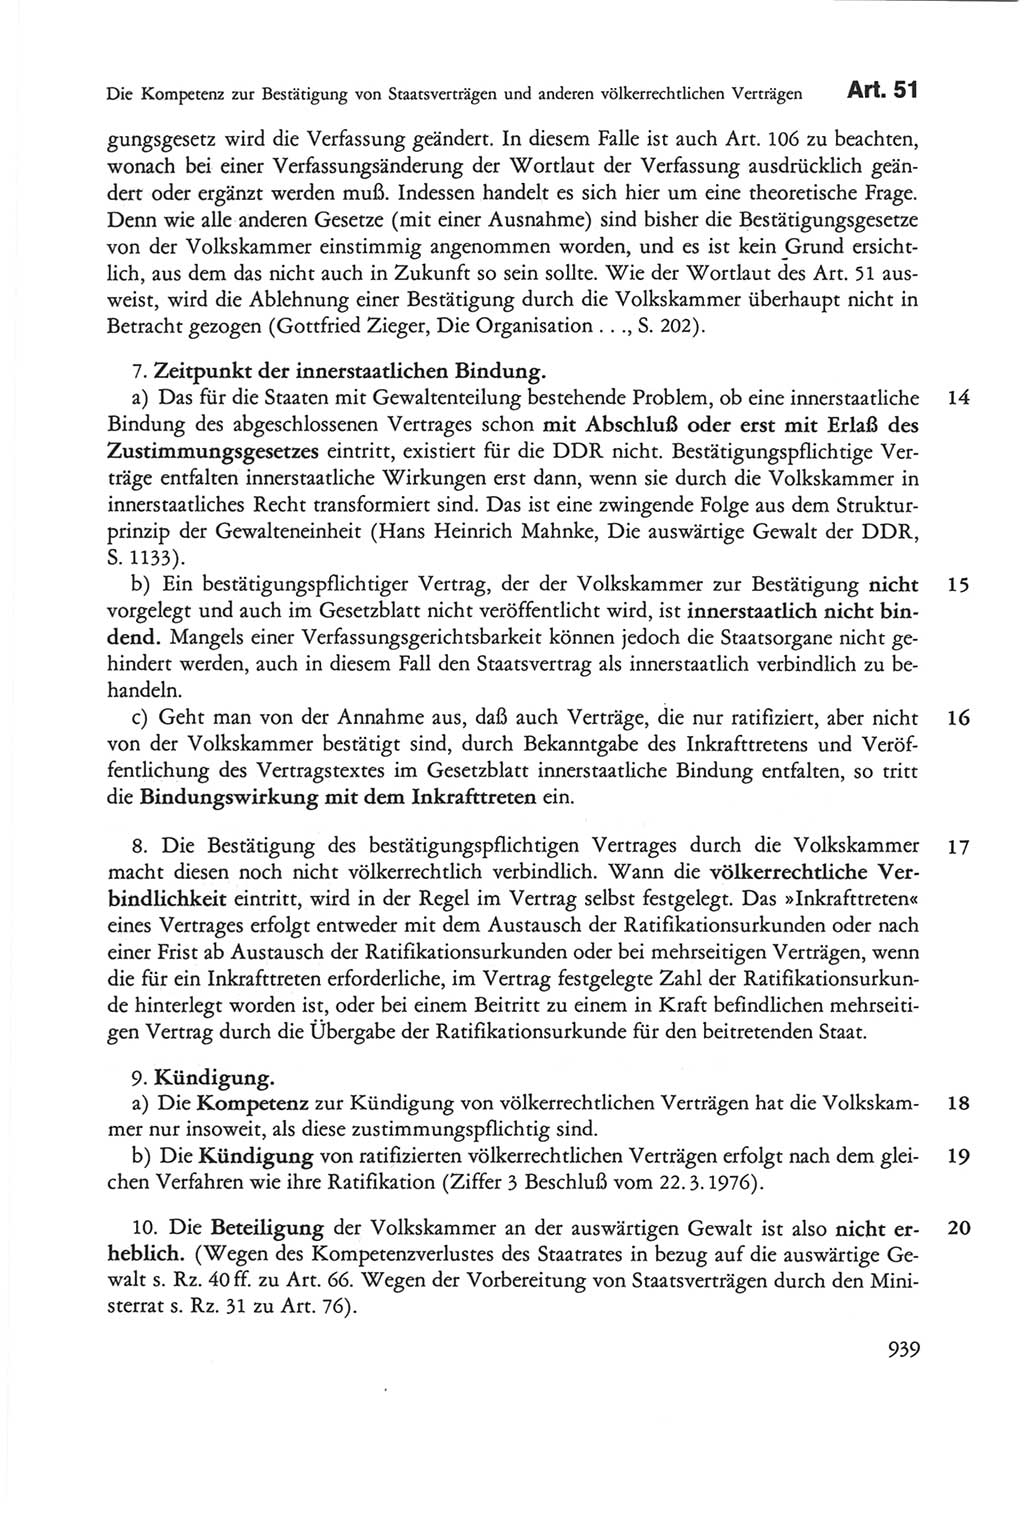 Die sozialistische Verfassung der Deutschen Demokratischen Republik (DDR), Kommentar 1982, Seite 939 (Soz. Verf. DDR Komm. 1982, S. 939)